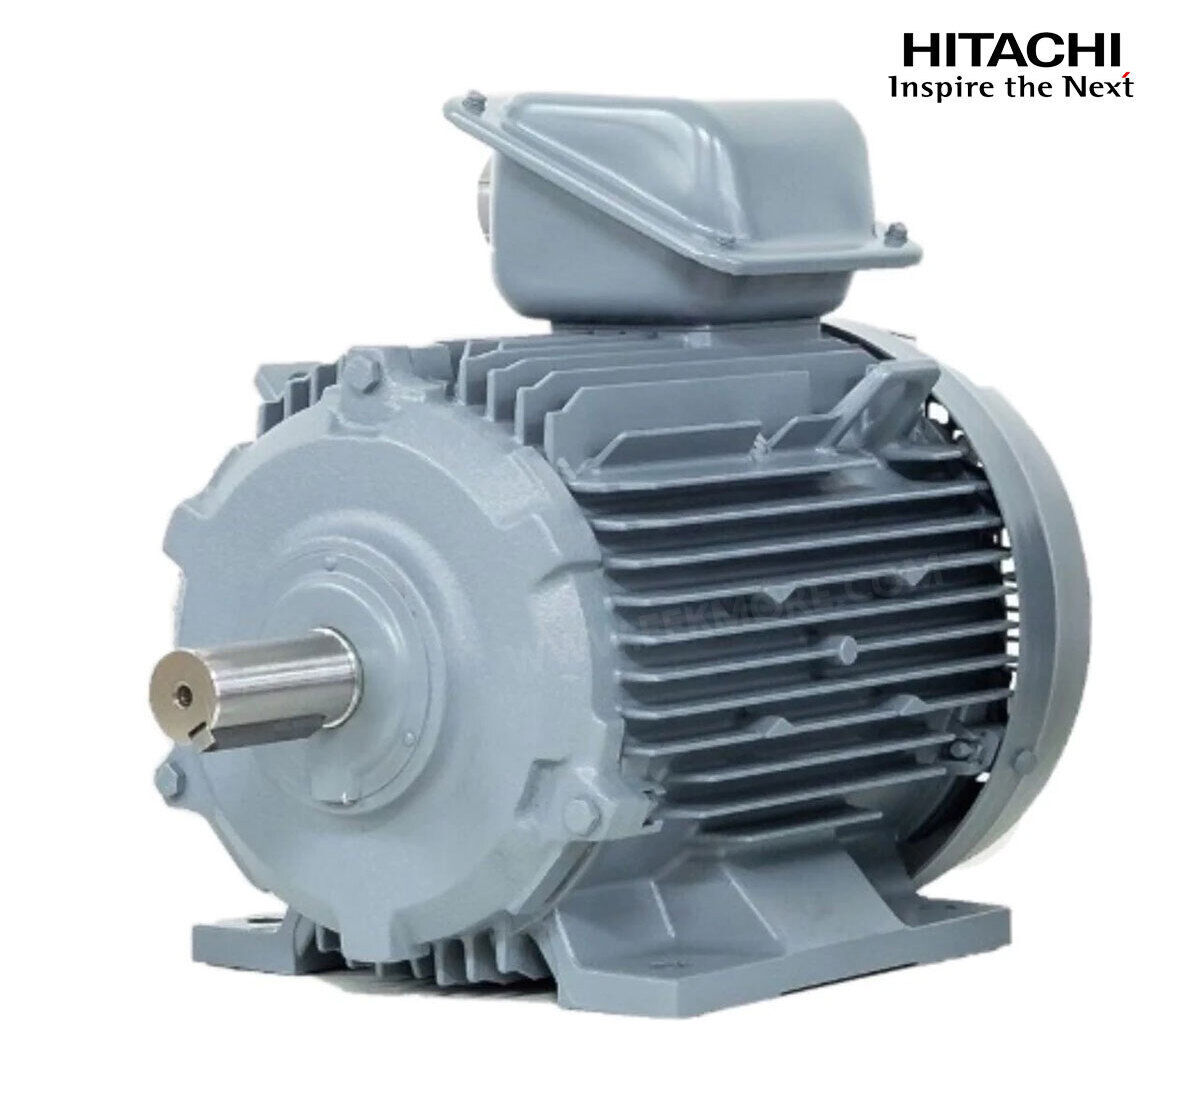 มอเตอร์ฮิตาชิของแท้ 100% HITACHI รุ่น TFO-KK กำลัง 50 แรงม้า (37 KW.) กำลังไฟฟ้าที่ใช้ 380V ความเร็วรอบตัวเปล่า 1450 RPM แกนเพลามอเตอร์ 60 MM.รับประกัน 3 ปี มีของพร้อมจัดส่งทุกวัน